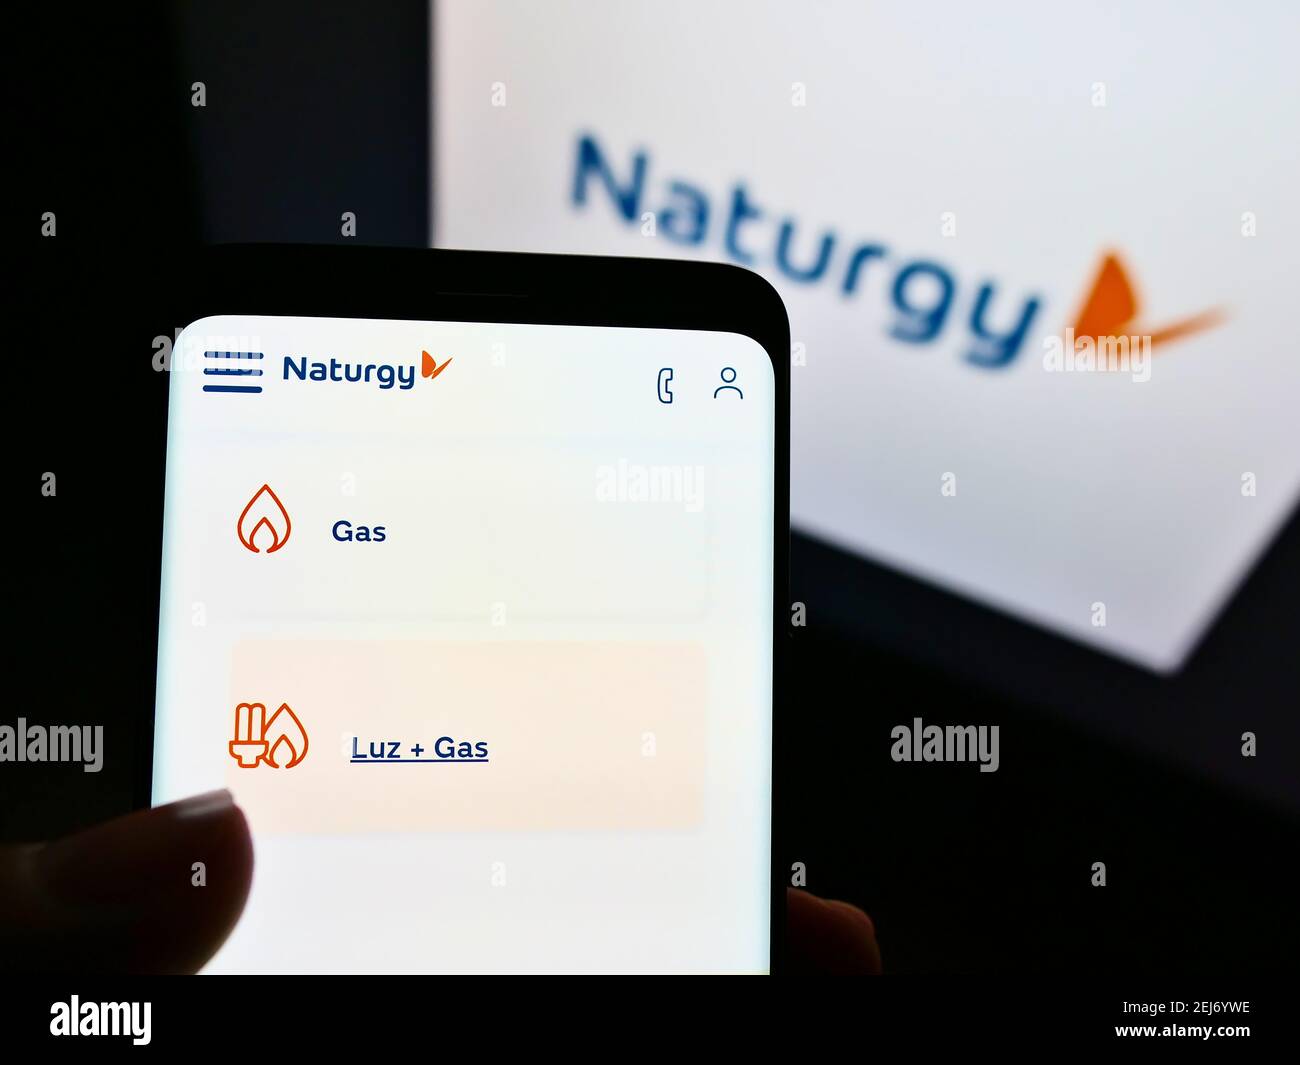 Persona che detiene il telefono cellulare con il sito web della società energetica spagnola Naturgy Energy Group SA sullo schermo con il logo. Messa a fuoco sulla parte centrale superiore del display del telefono. Foto Stock